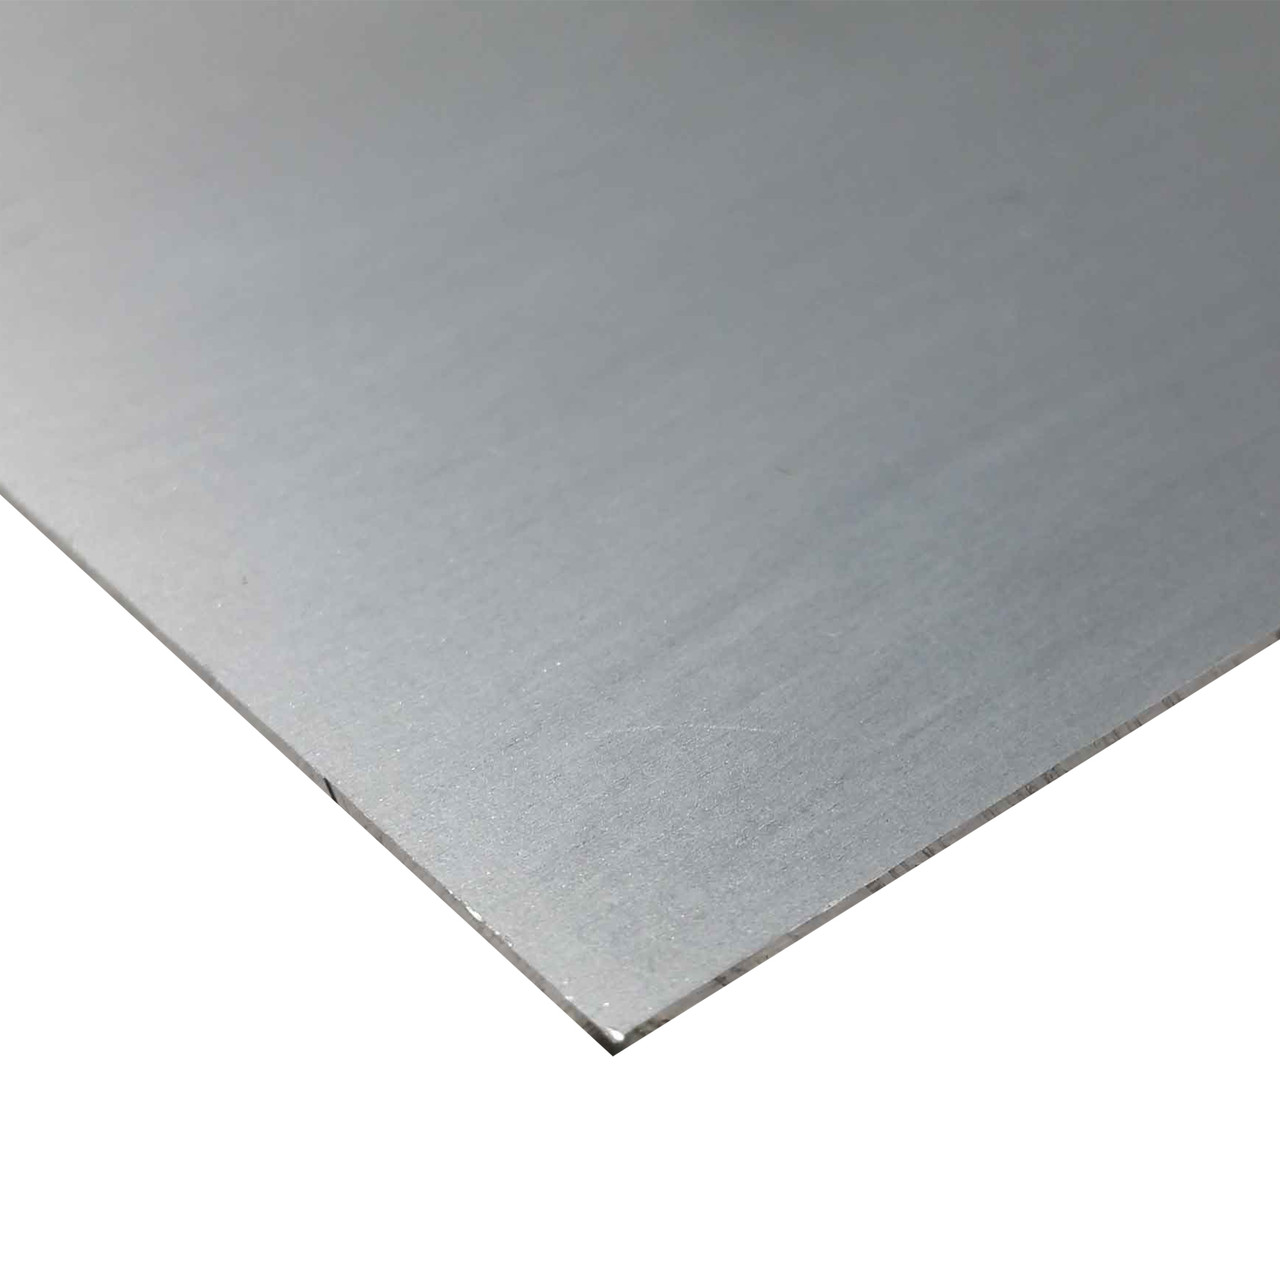 0.125" x 10" x 48", 7075-T6 Aluminum Sheet, Alclad